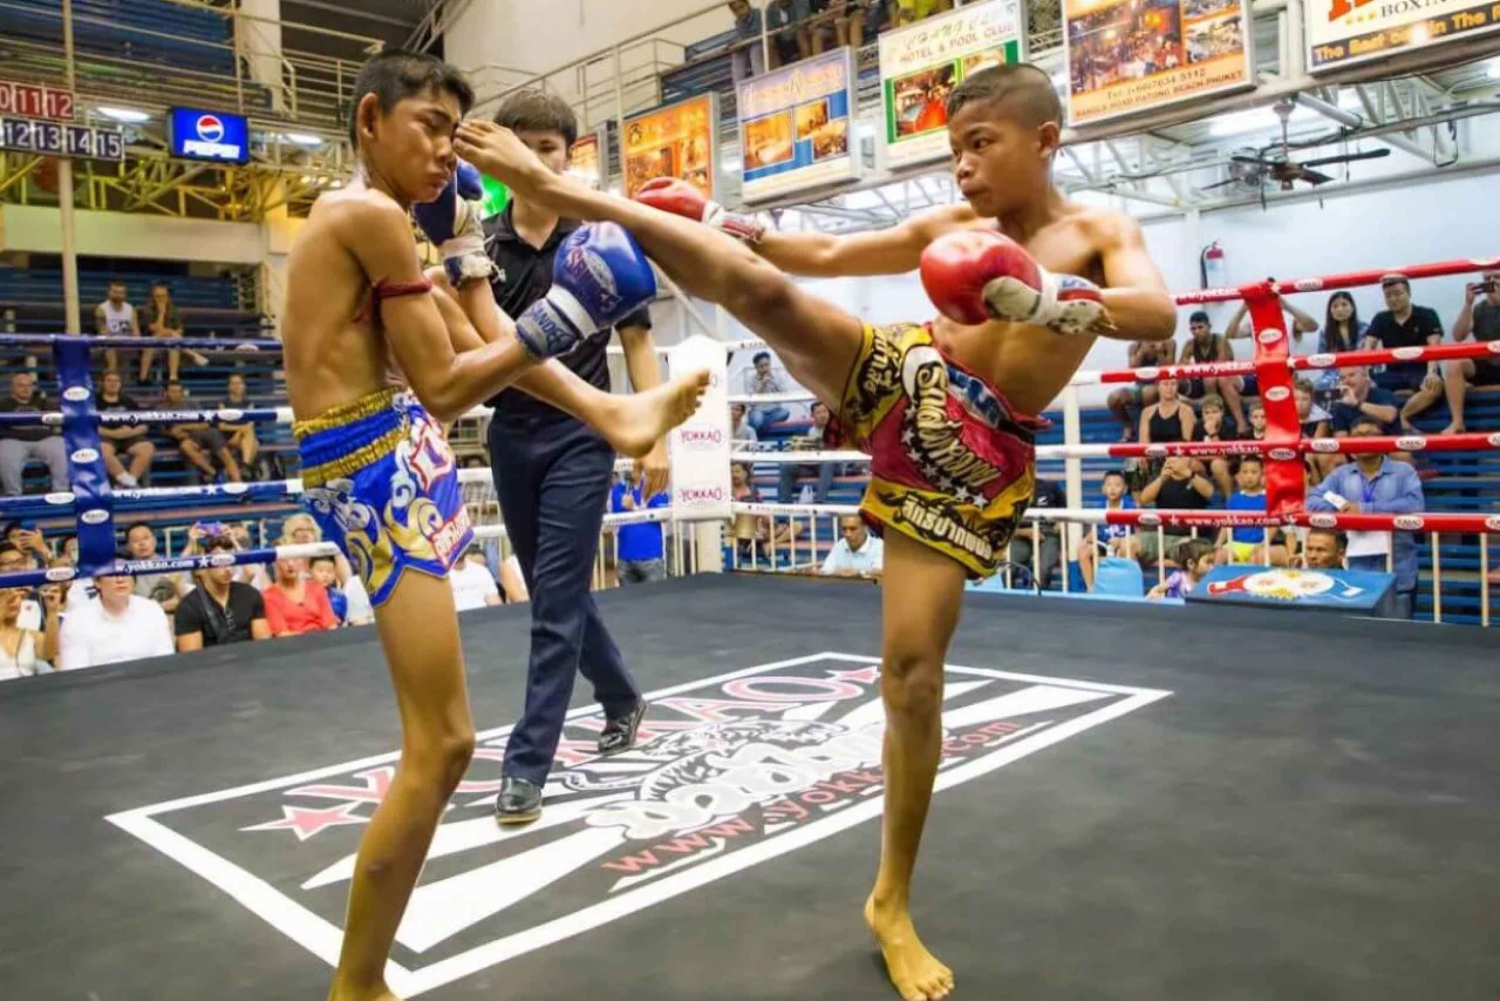 Spännande nattliv i Phuket: Bangla Road och Muay Thai-boxning